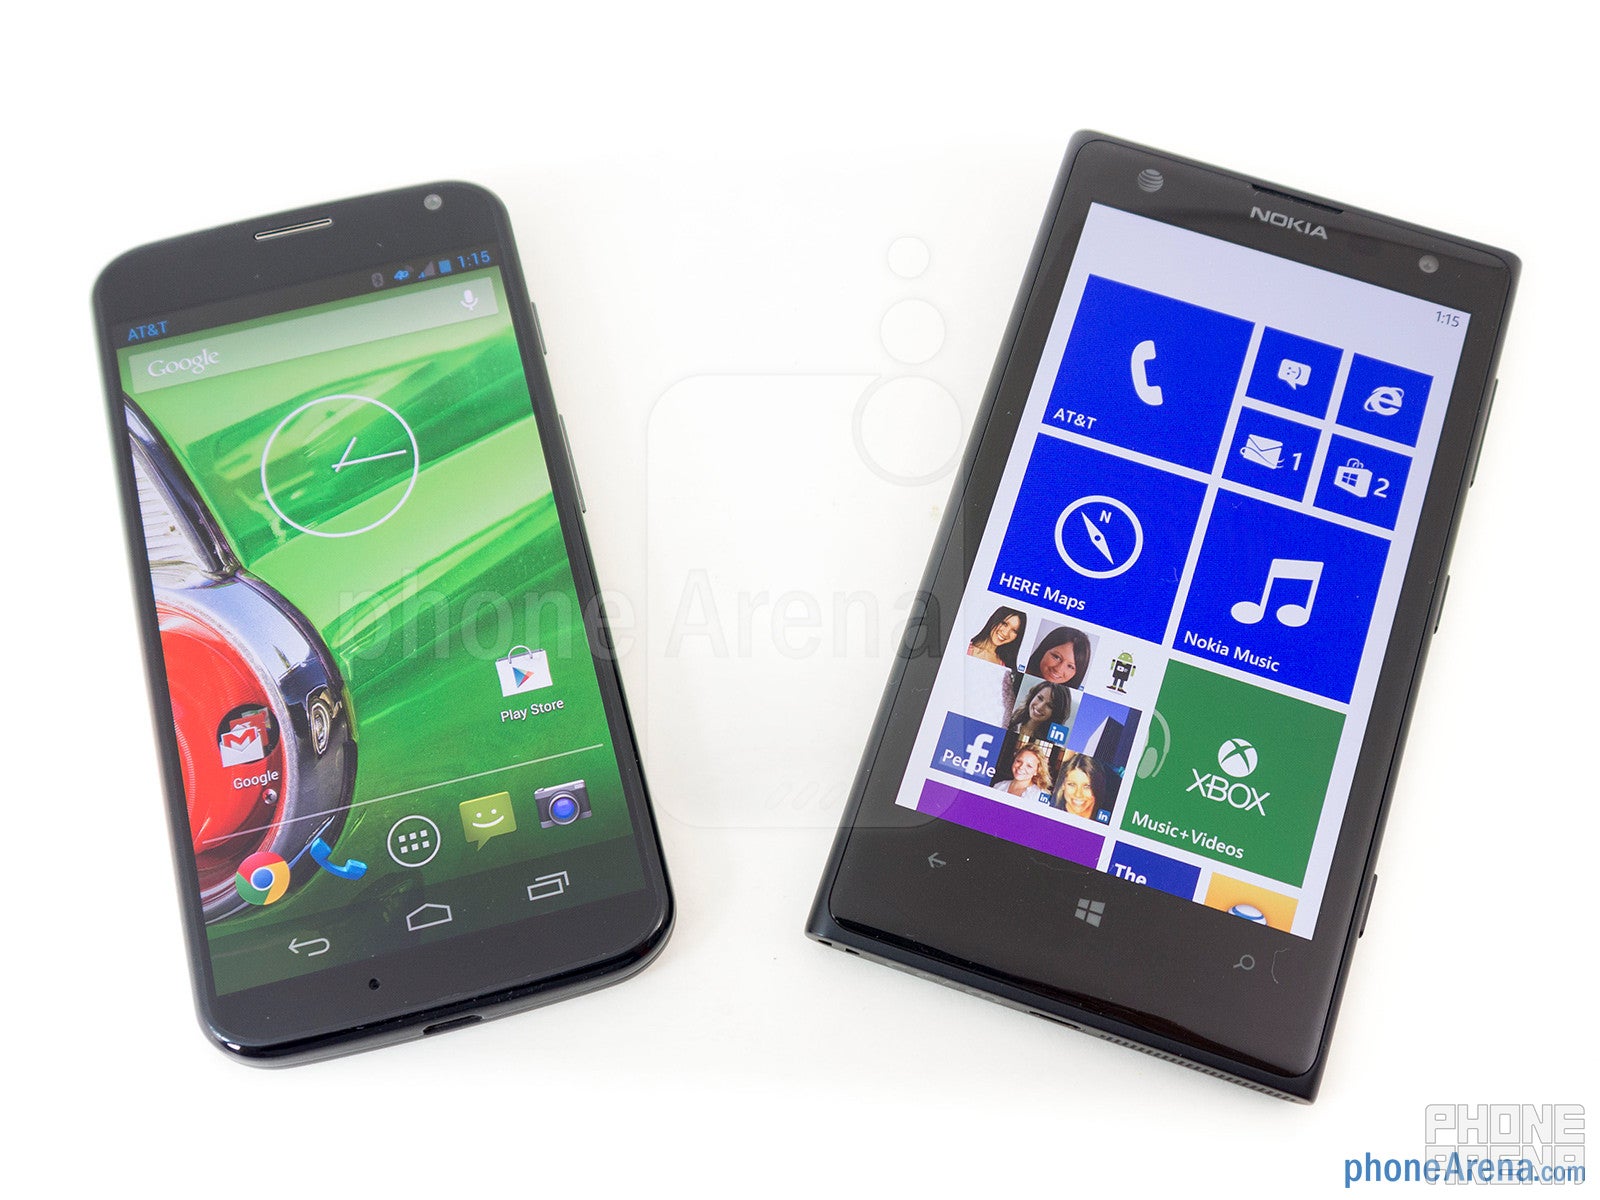 Motorola Moto X vs Nokia Lumia 1020